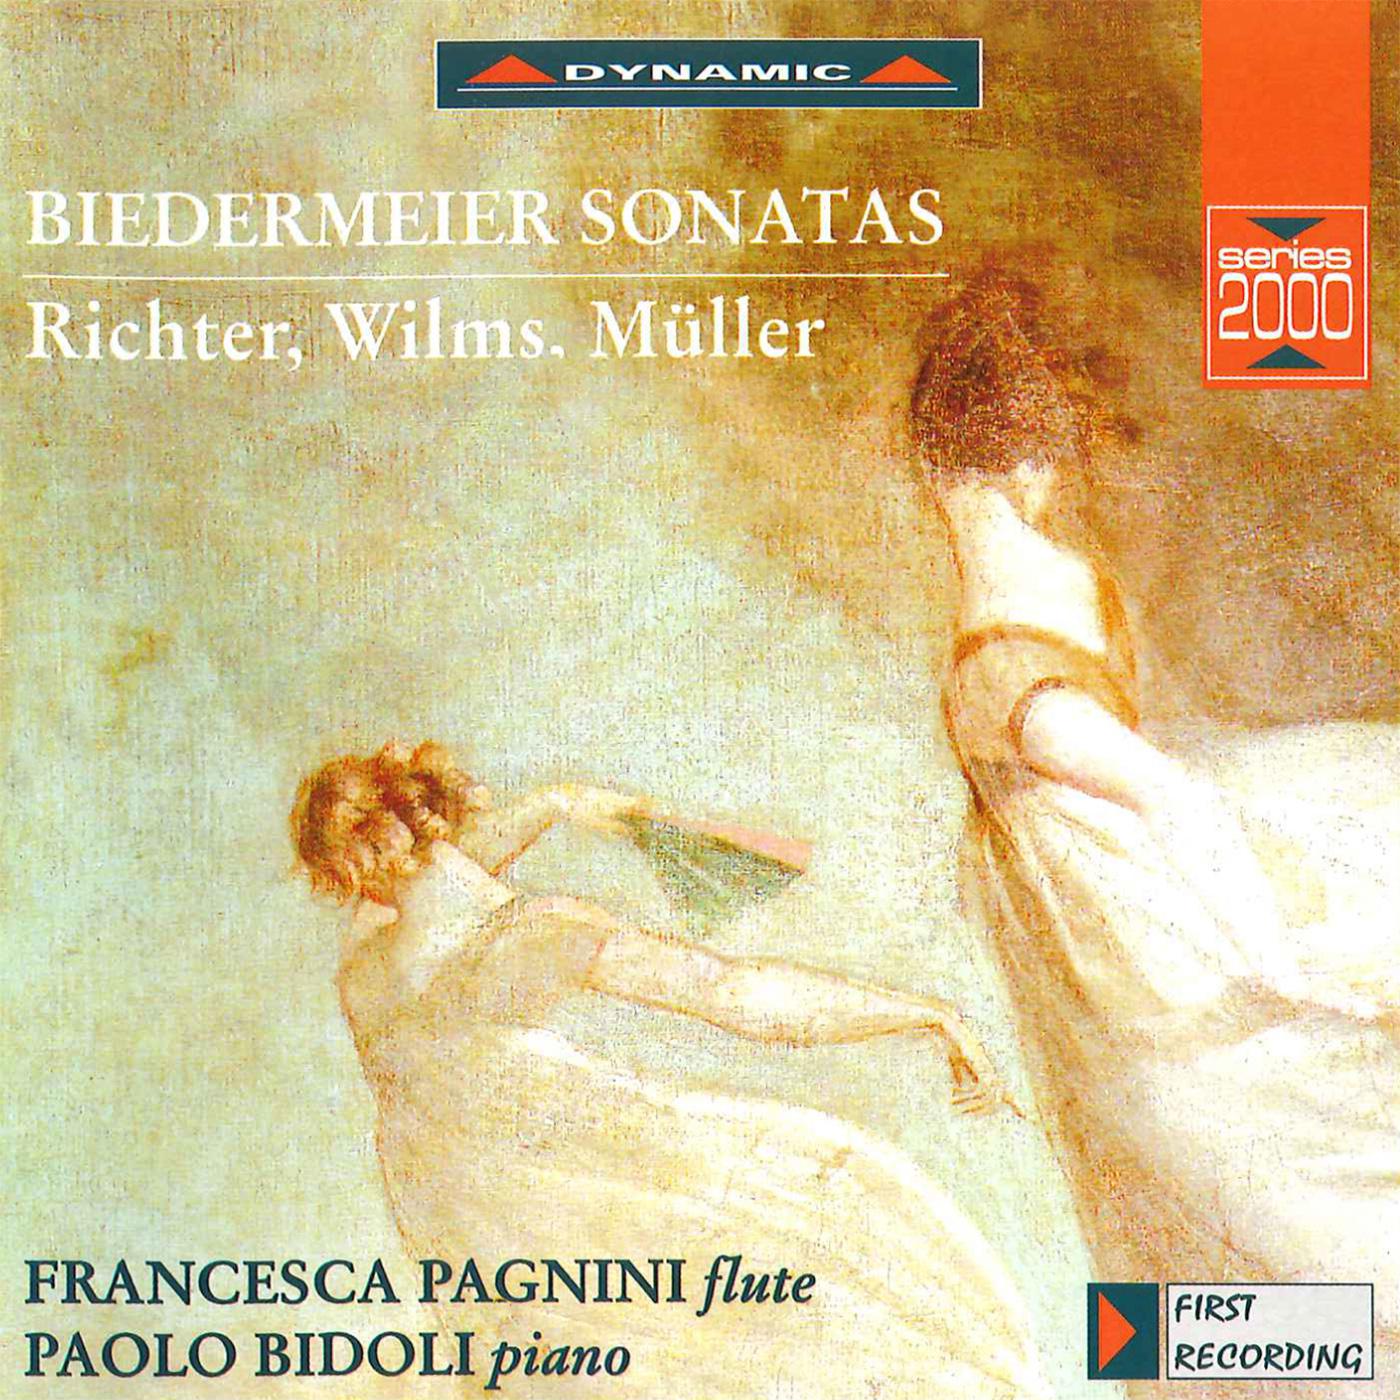 Francesca Pagnini - Grande Sonate in C Major, Op. 38:I. Adagio ma non troppo - Allegro spiritoso